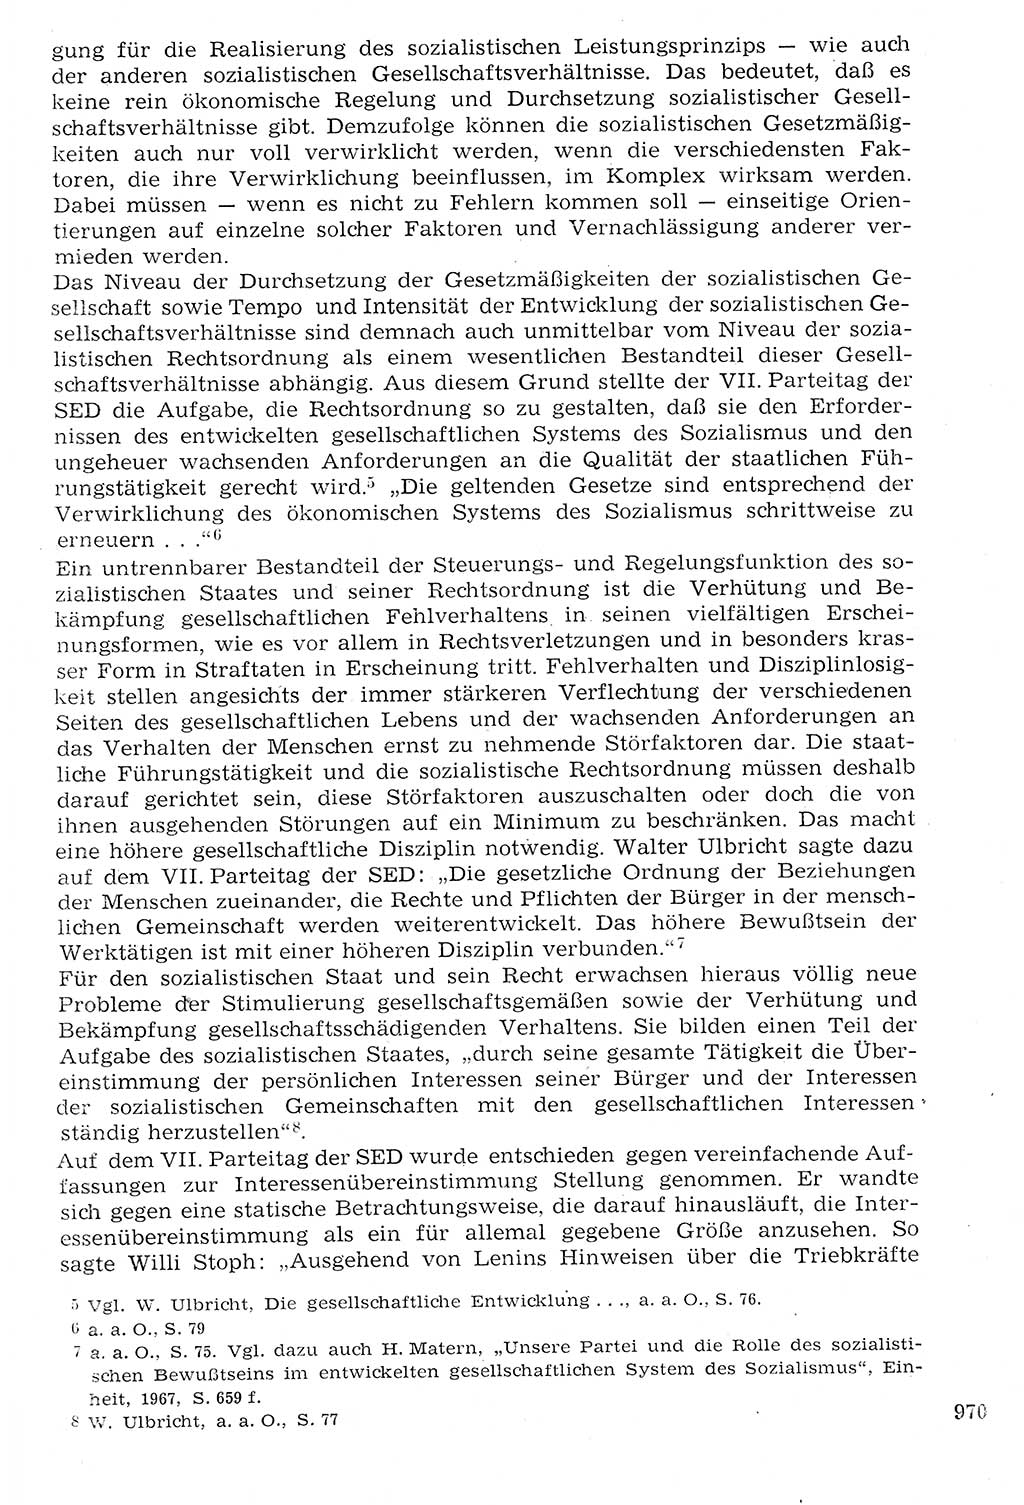 Staat und Recht (StuR), 17. Jahrgang [Deutsche Demokratische Republik (DDR)] 1968, Seite 970 (StuR DDR 1968, S. 970)